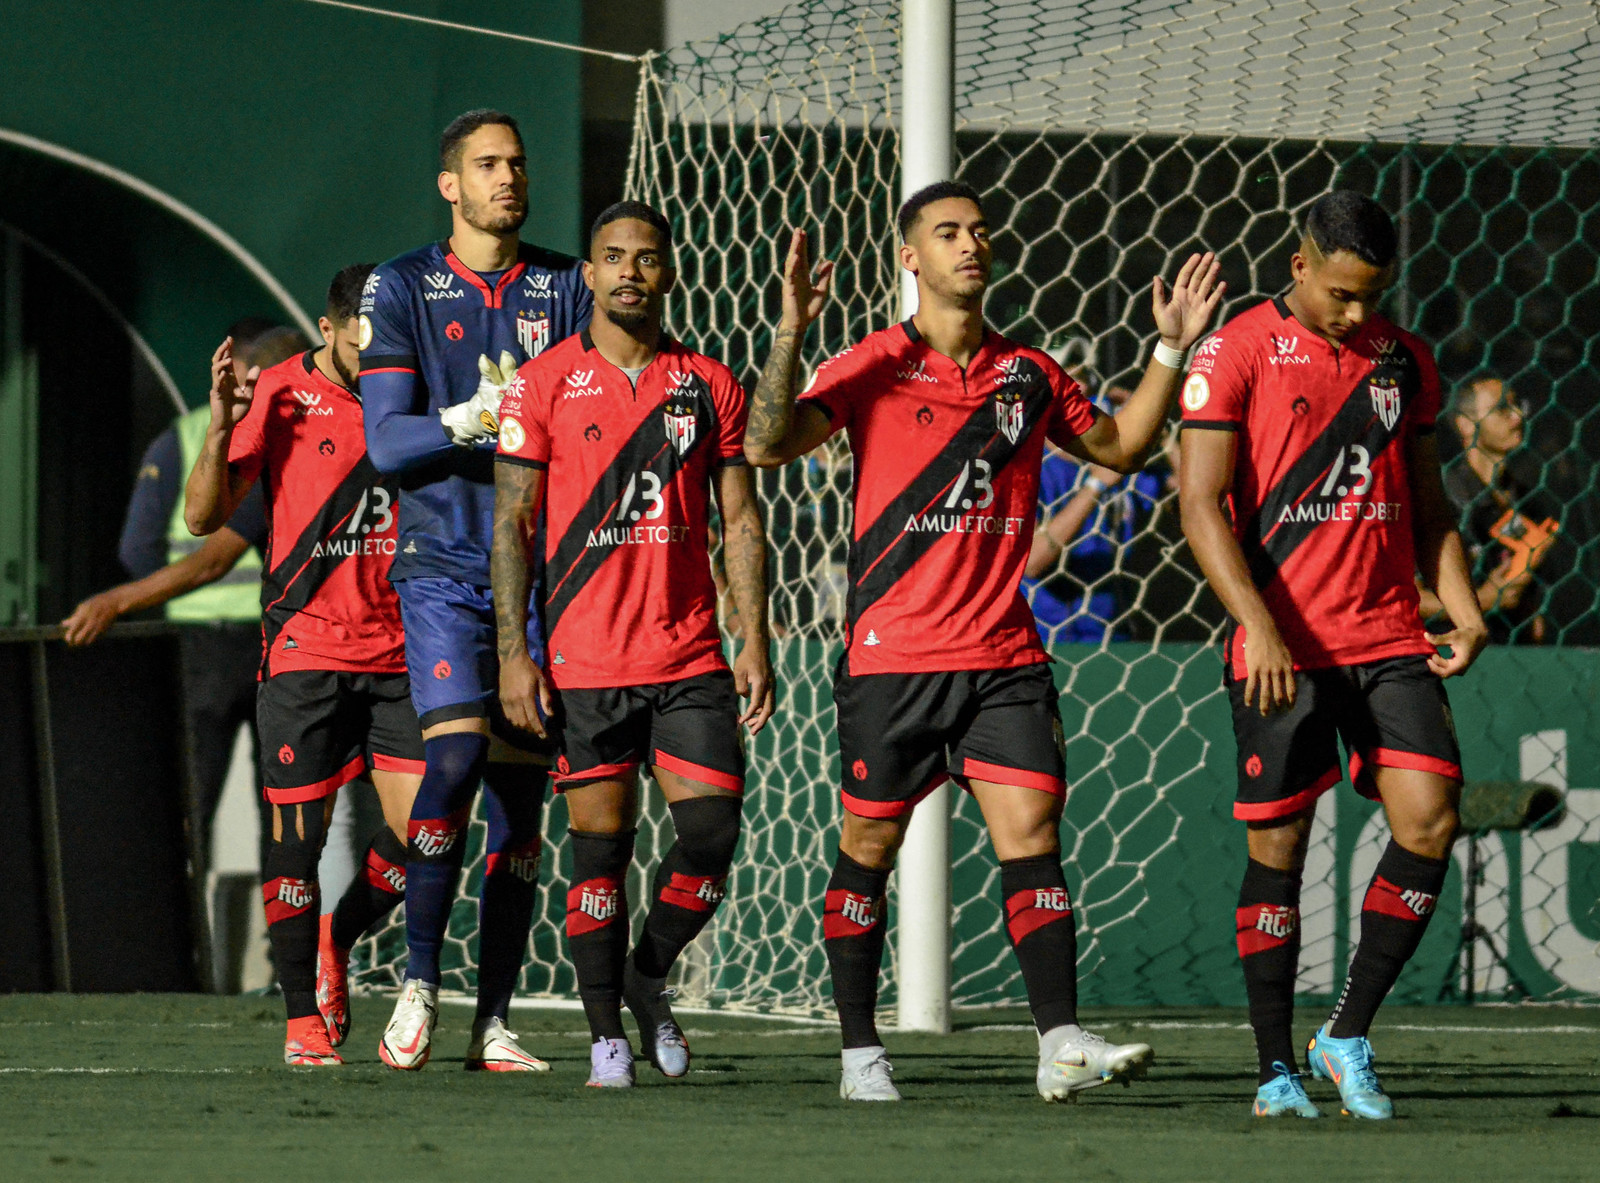 Depois de vitória contra rival, Atlético-GO quebra tabu e volta a vencer Goiás em competições nacionais após 5 anos